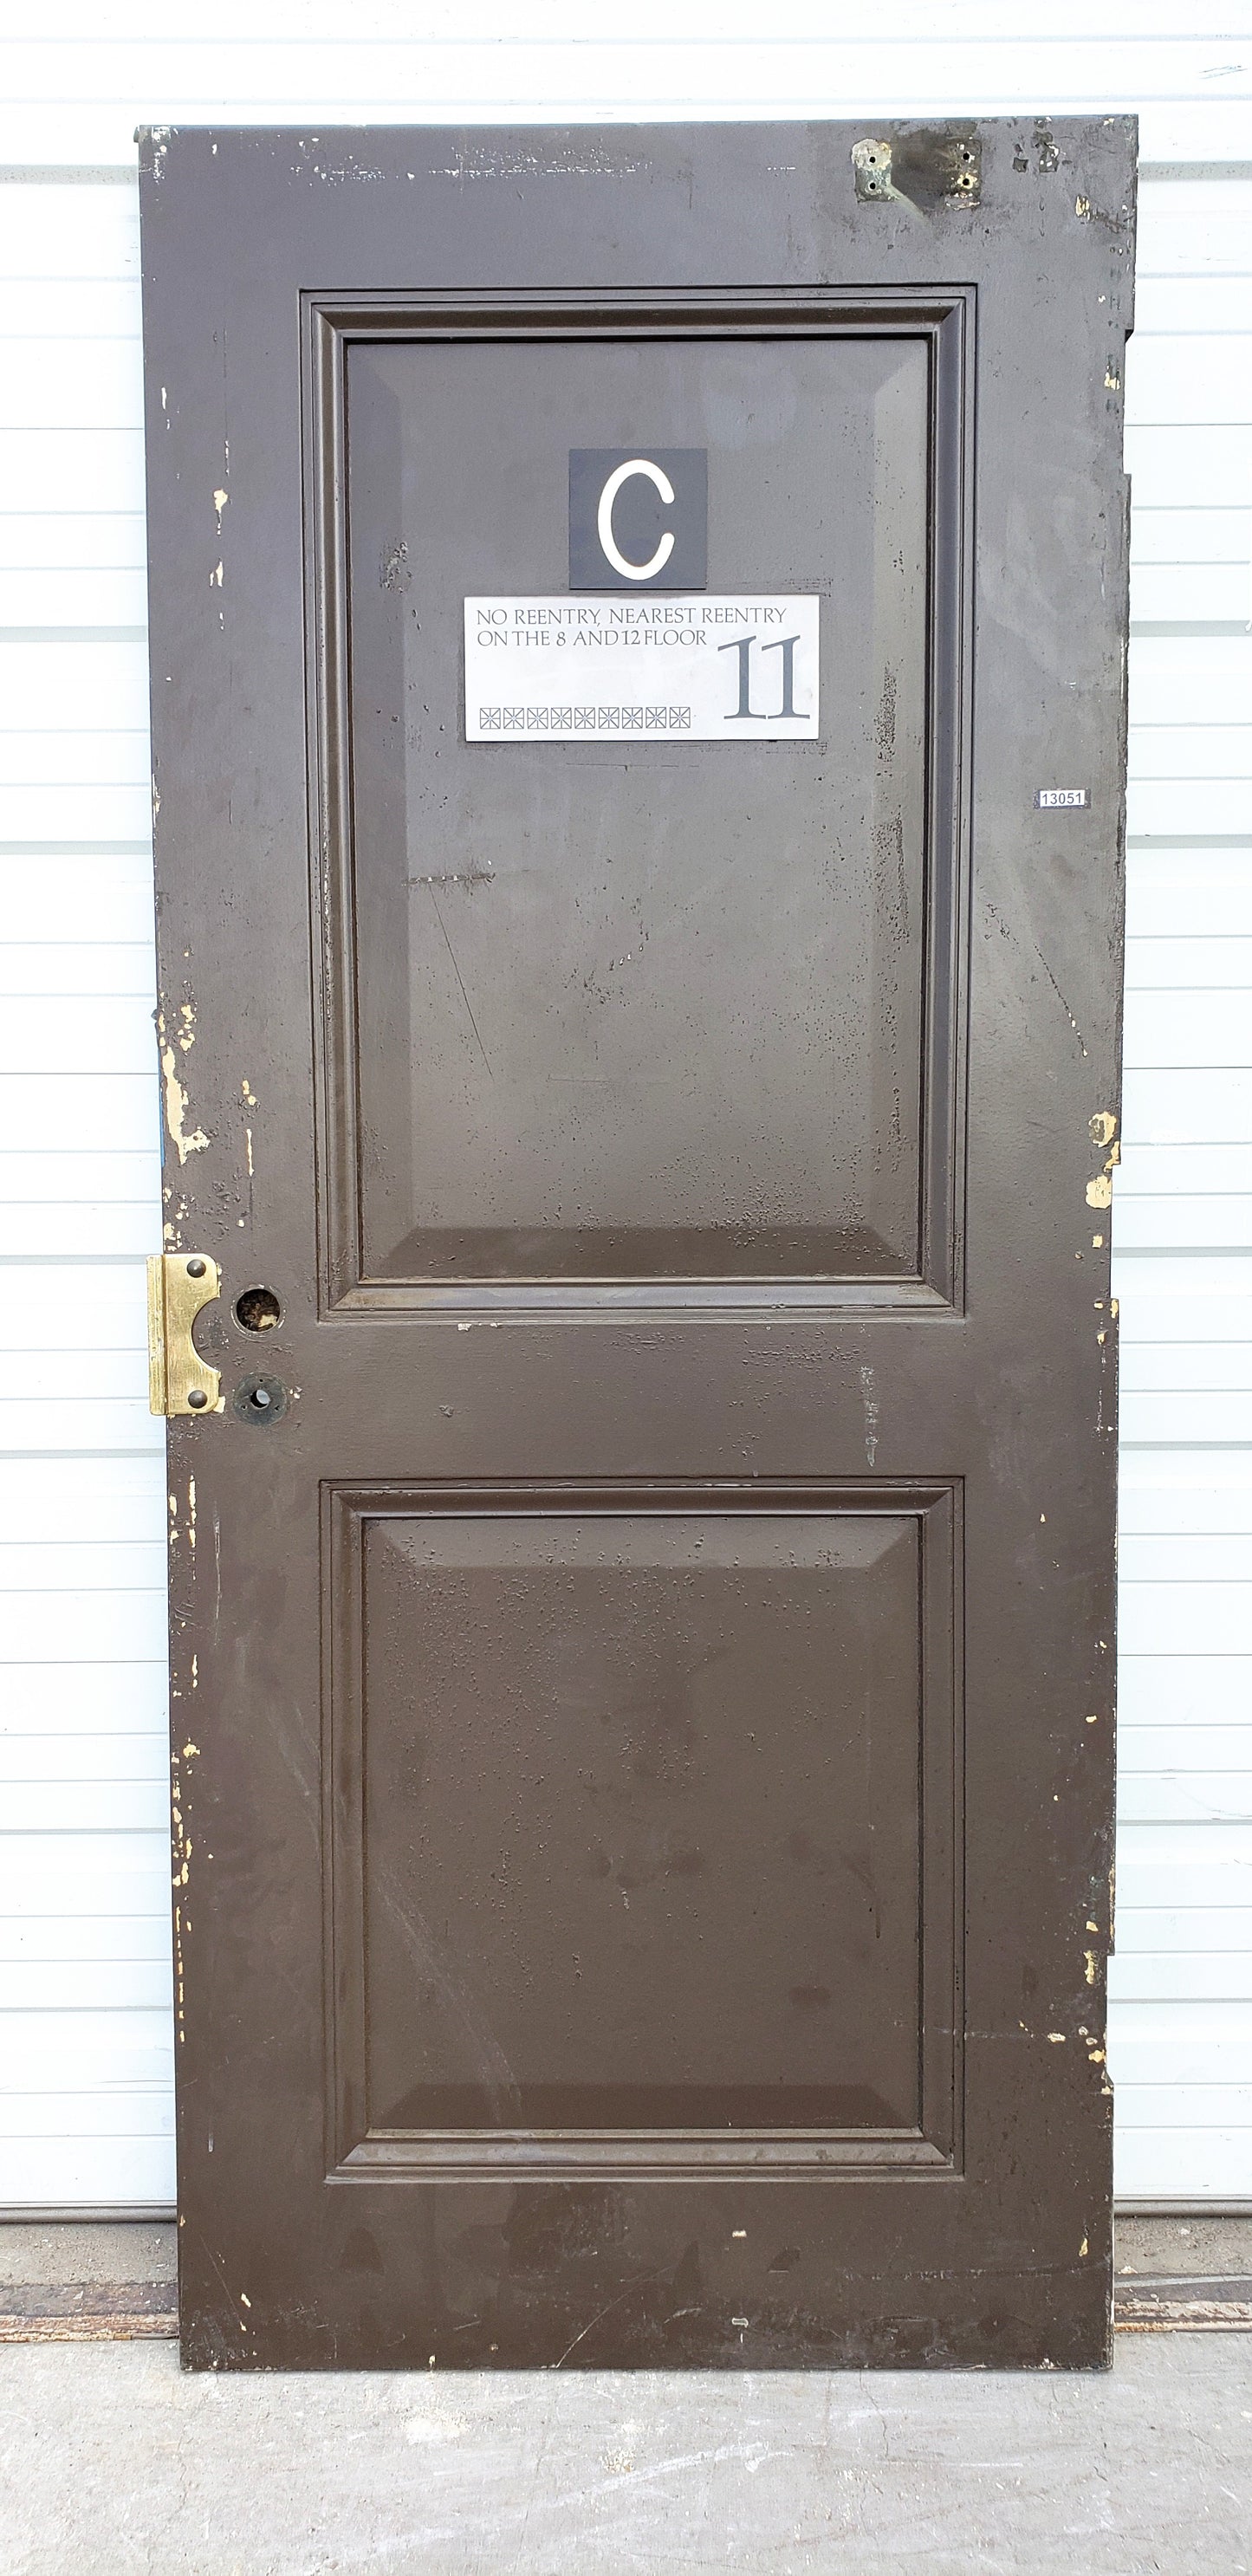 Reclaimed Single Metal 2 Panel Fire Door